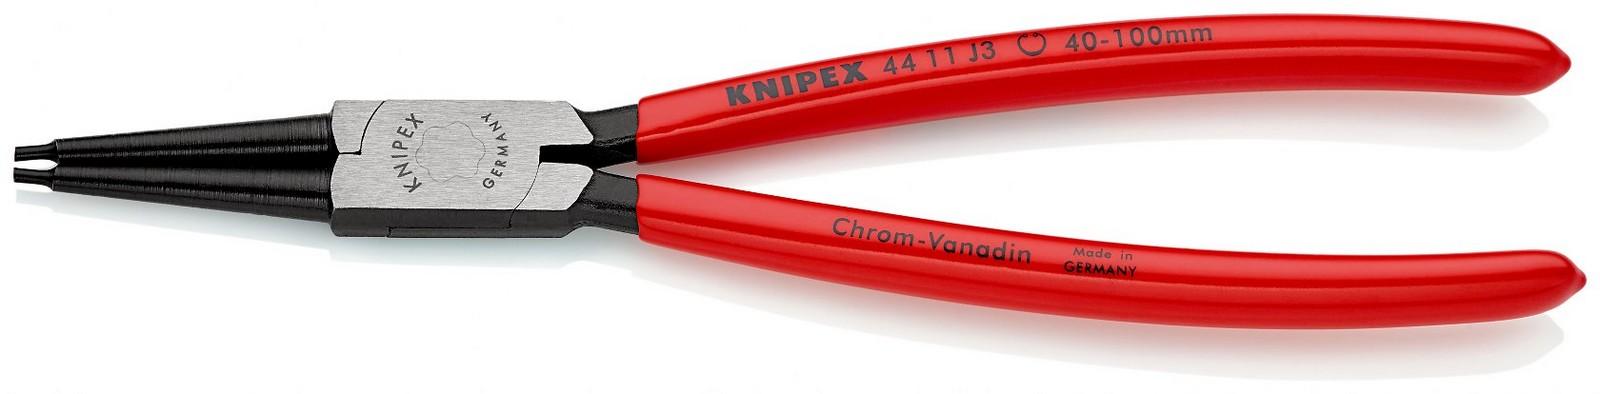 KNIPEX Klešta za unutrašnje sigurnosne prstenove 225mm 44 11 J3 crvena